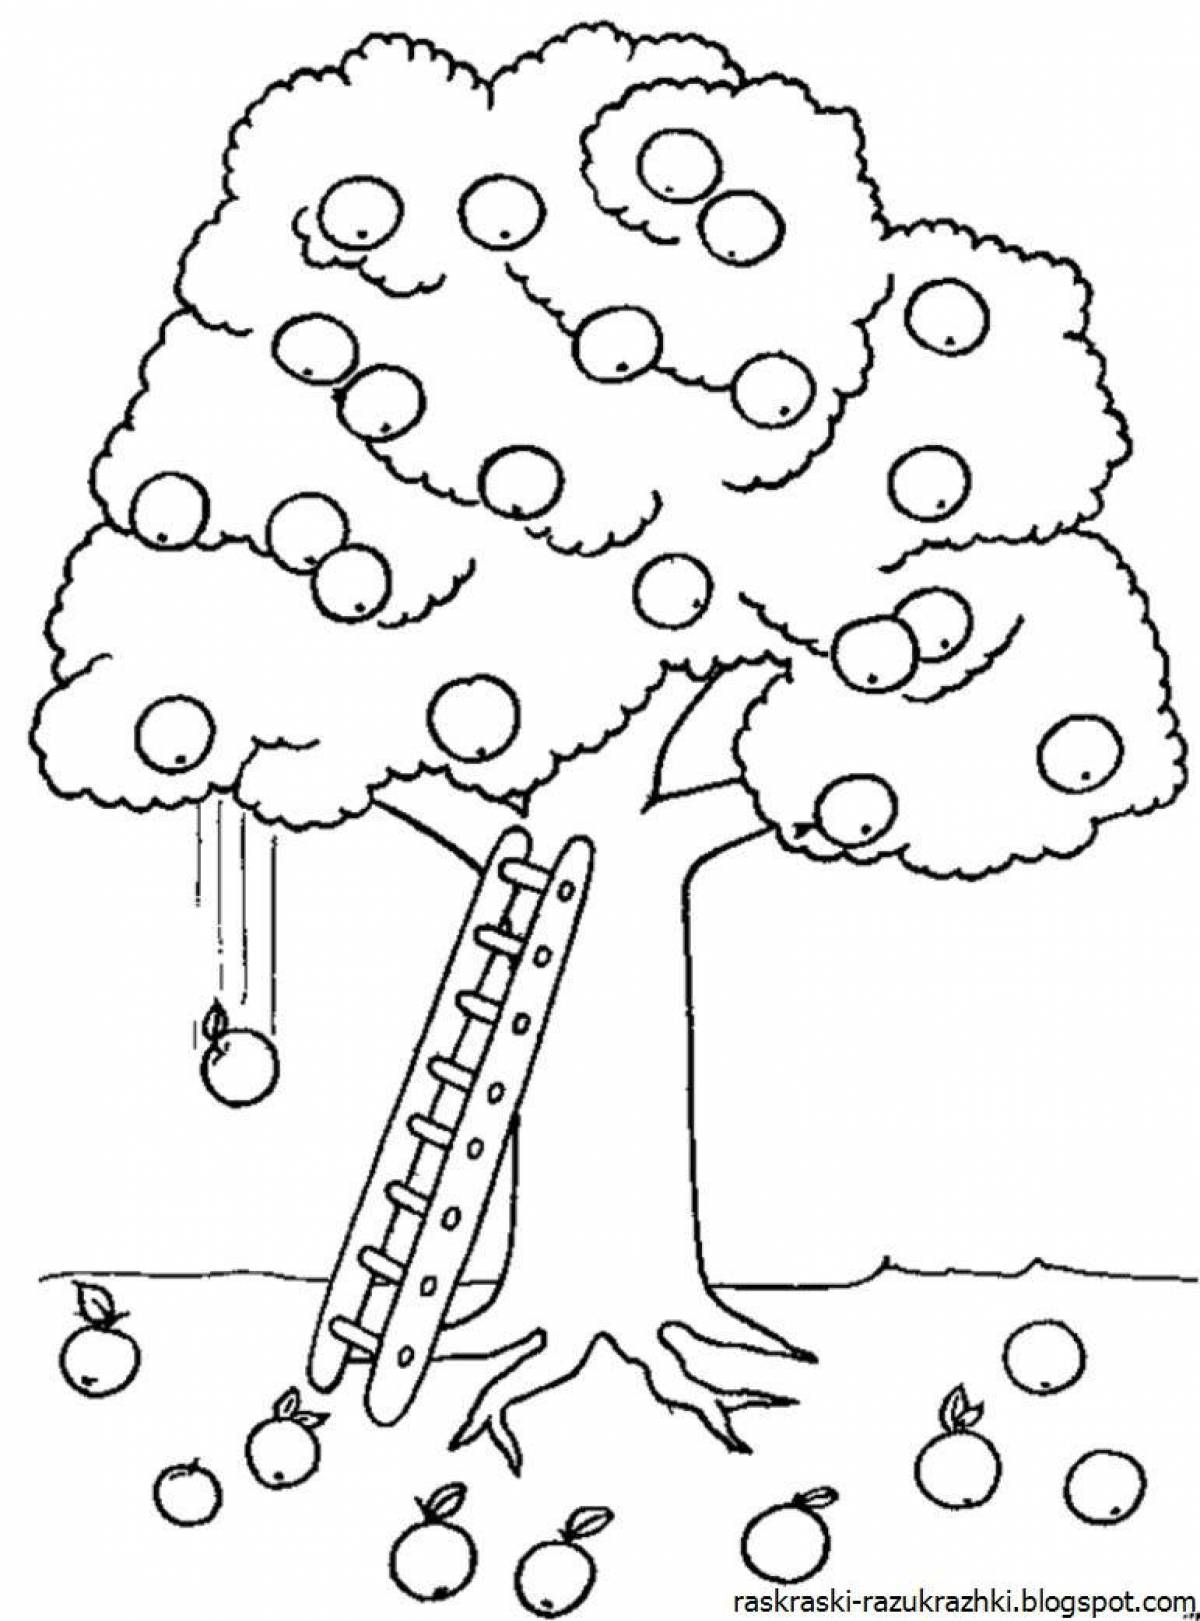 Игривая страница раскраски дерева для детей